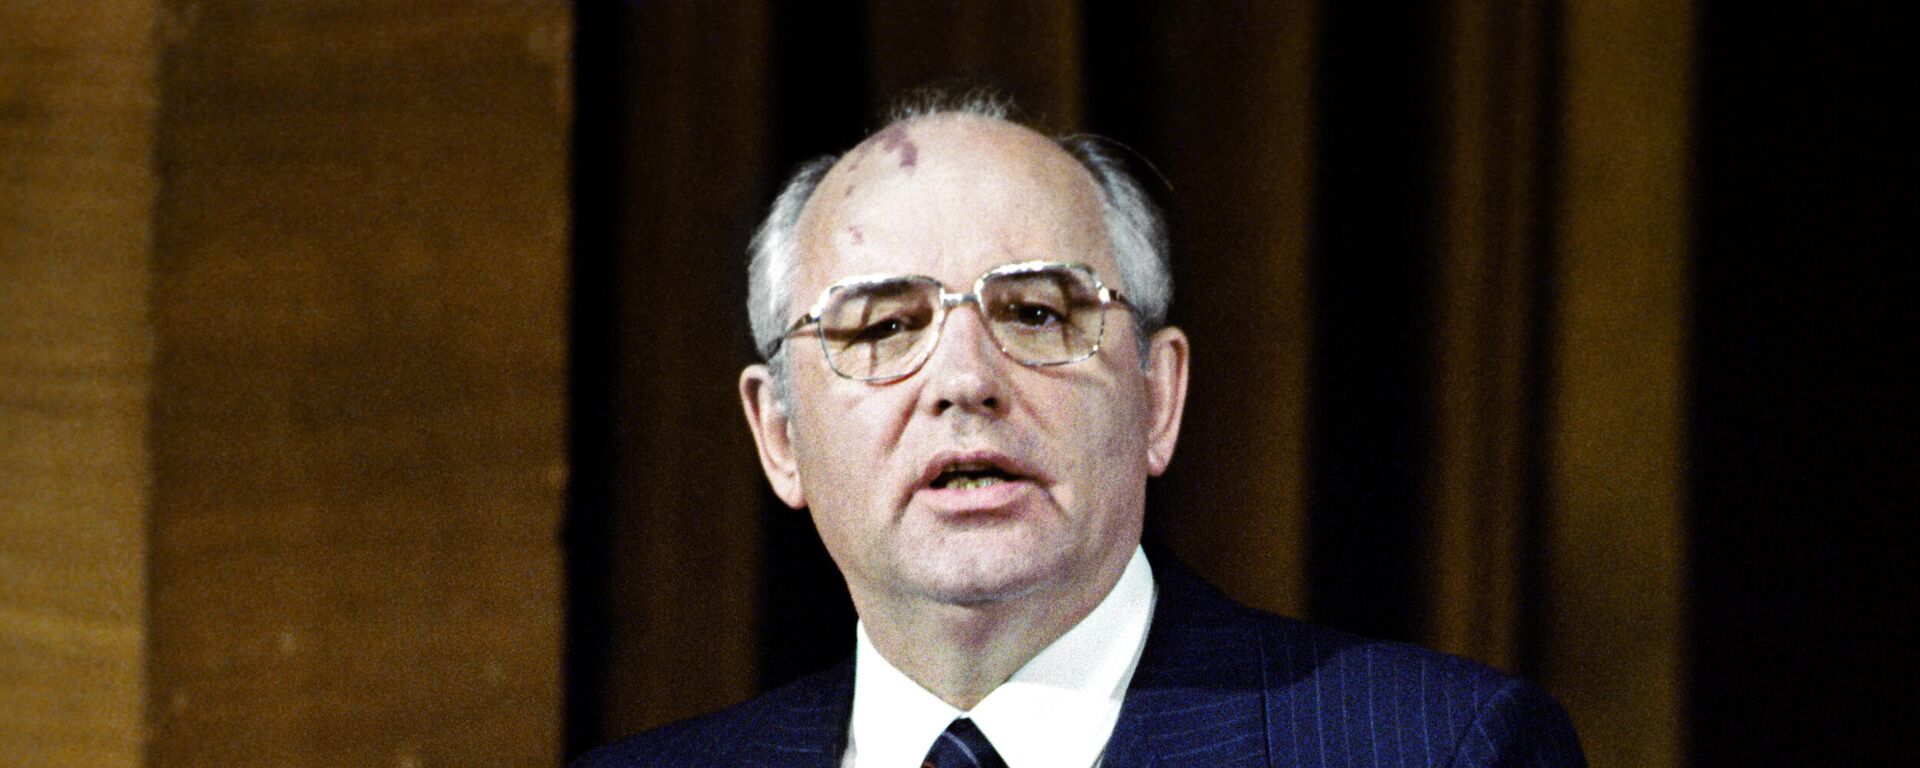 Михаил Горбачев во Владивостоке, 1986 - Sputnik Mundo, 1920, 02.03.2021